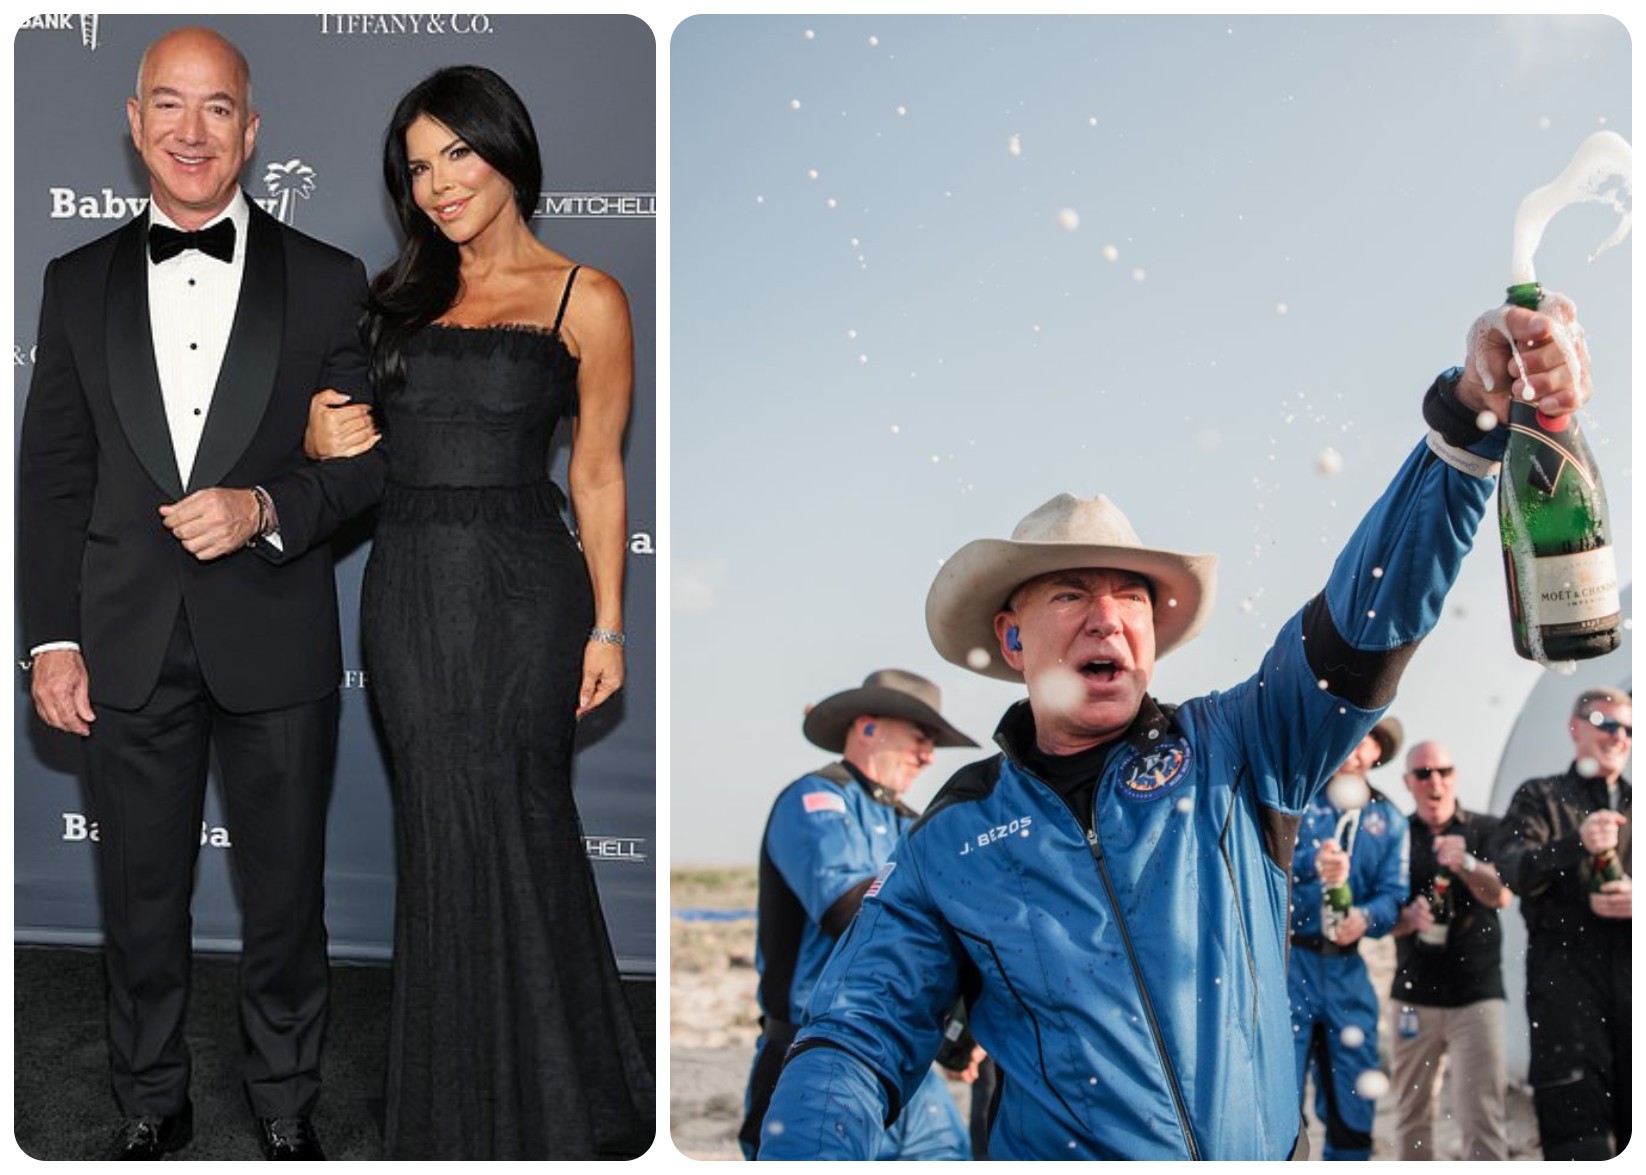 Xuất hiện cùng người đẹp trong bữa tiệc từ thiện xa hoa bậc nhất Hollywood, Jeff Bezos được kỳ vọng sẽ ủng hộ hàng triệu USD (ảnh: Daily Mail)